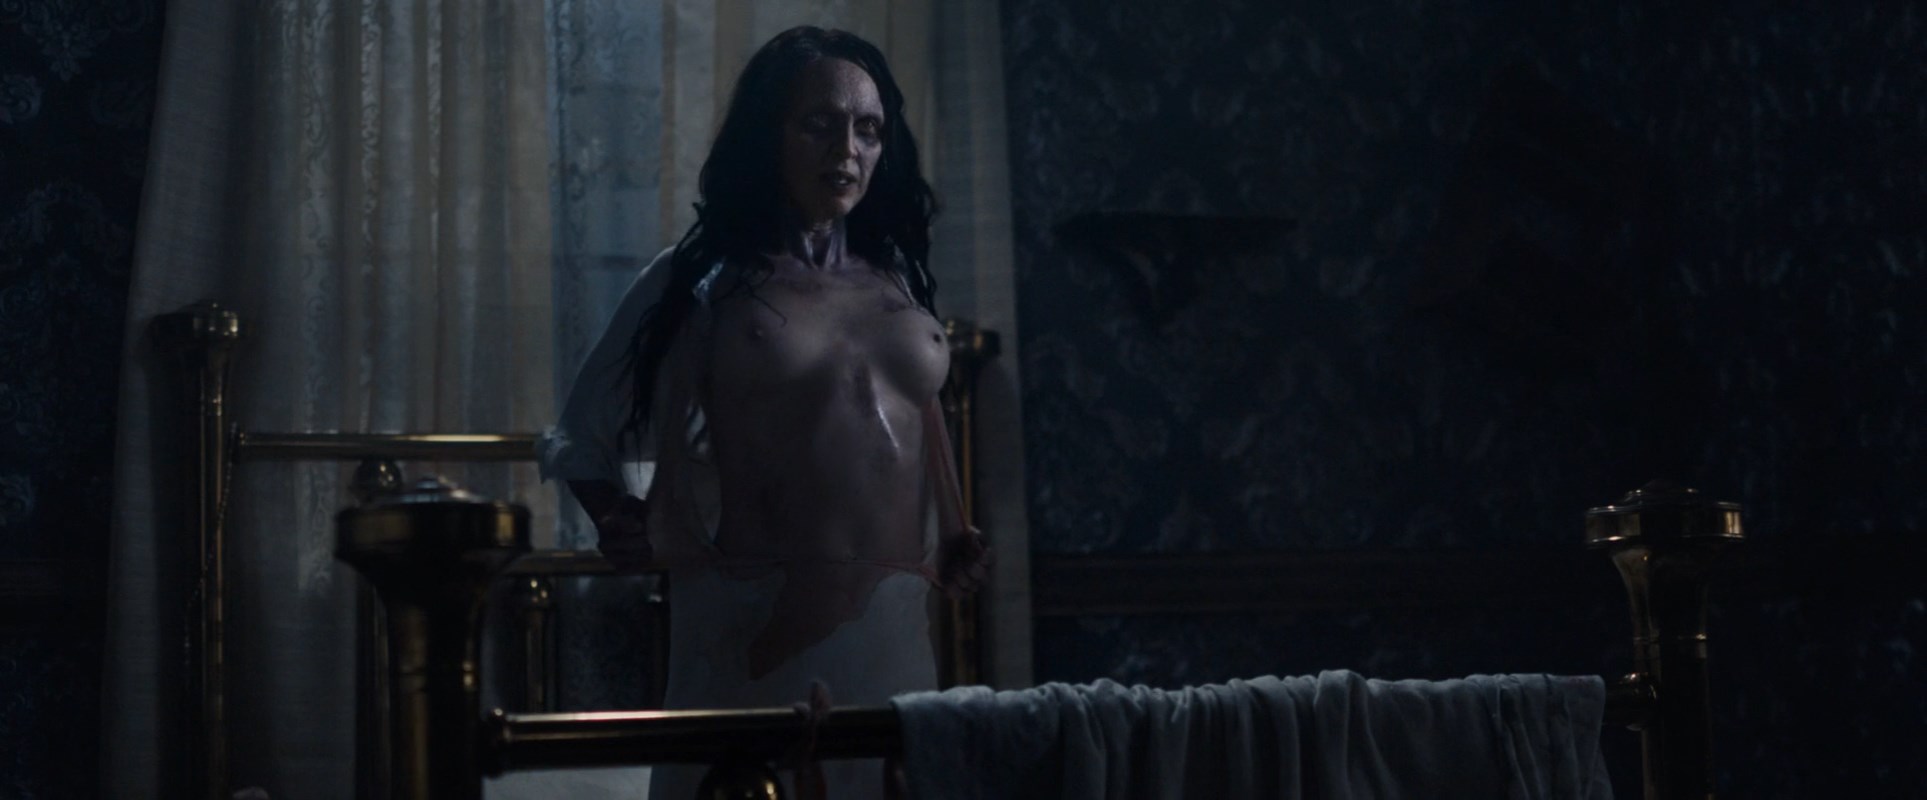 Asian Gods Nude - The Exorcism of God Nude Scenes Â» Celebs Nude Video - NudeCelebVideo.Net